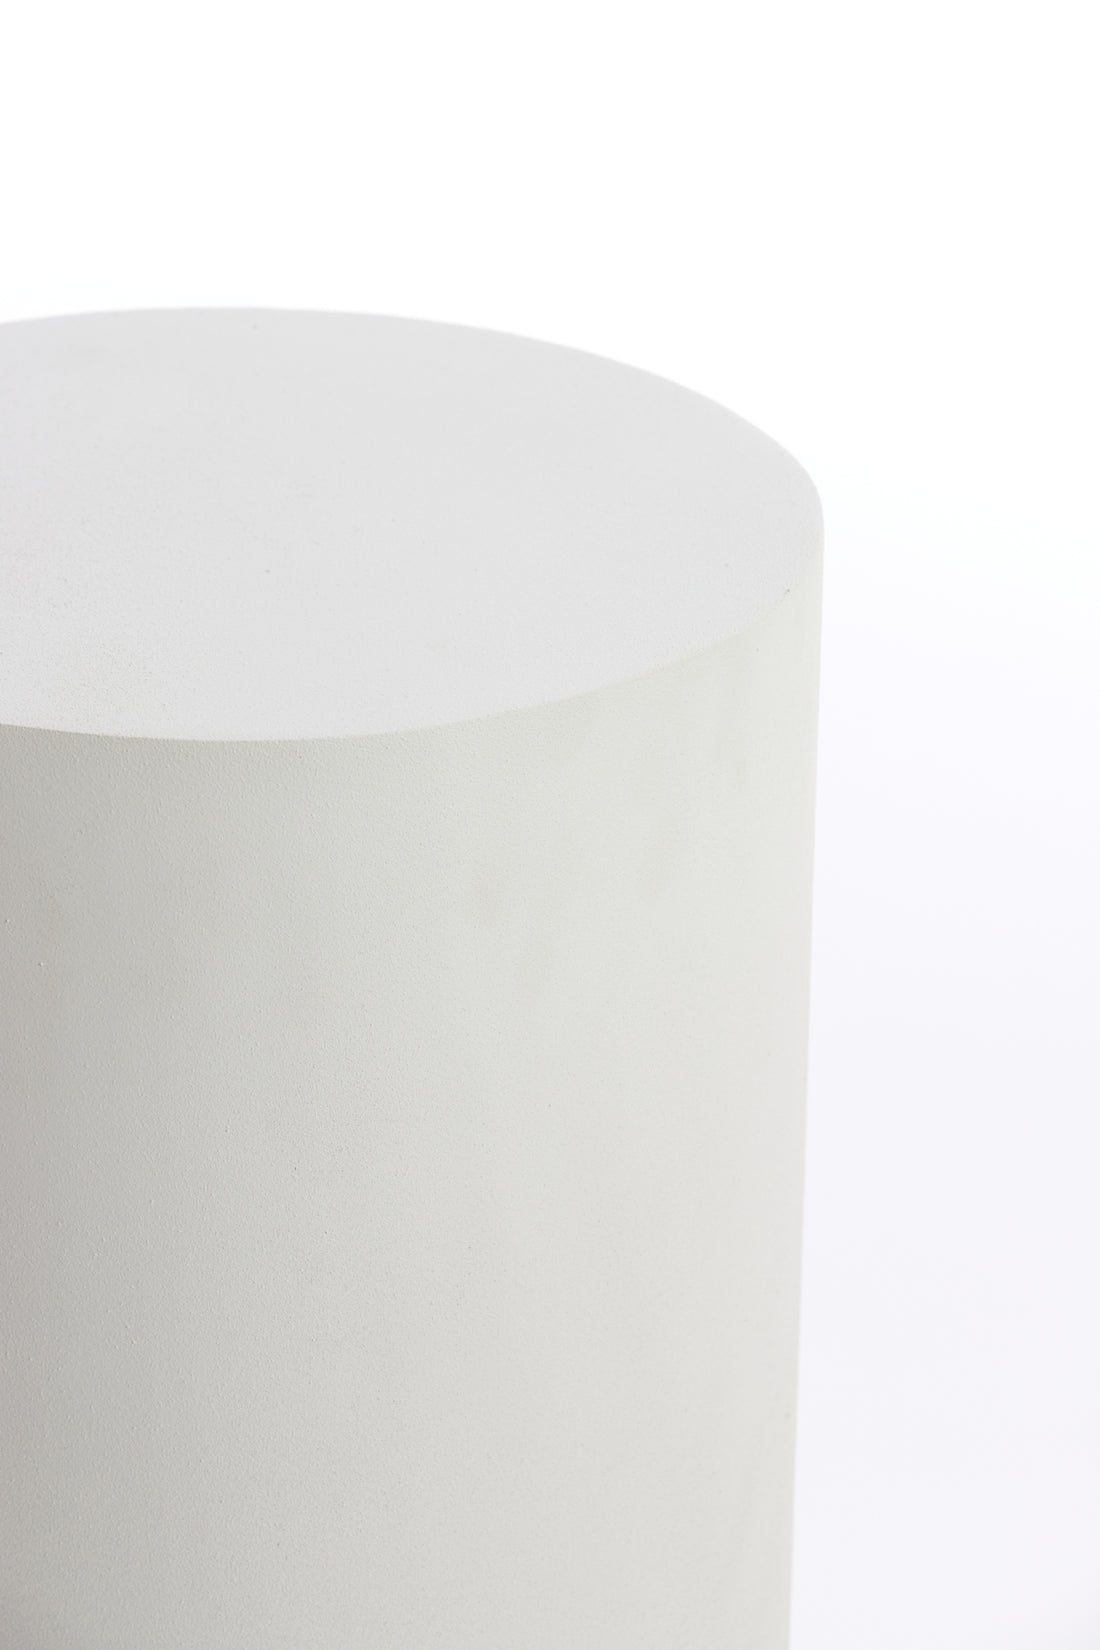 Column ALARIOS cream Ø30x60cm